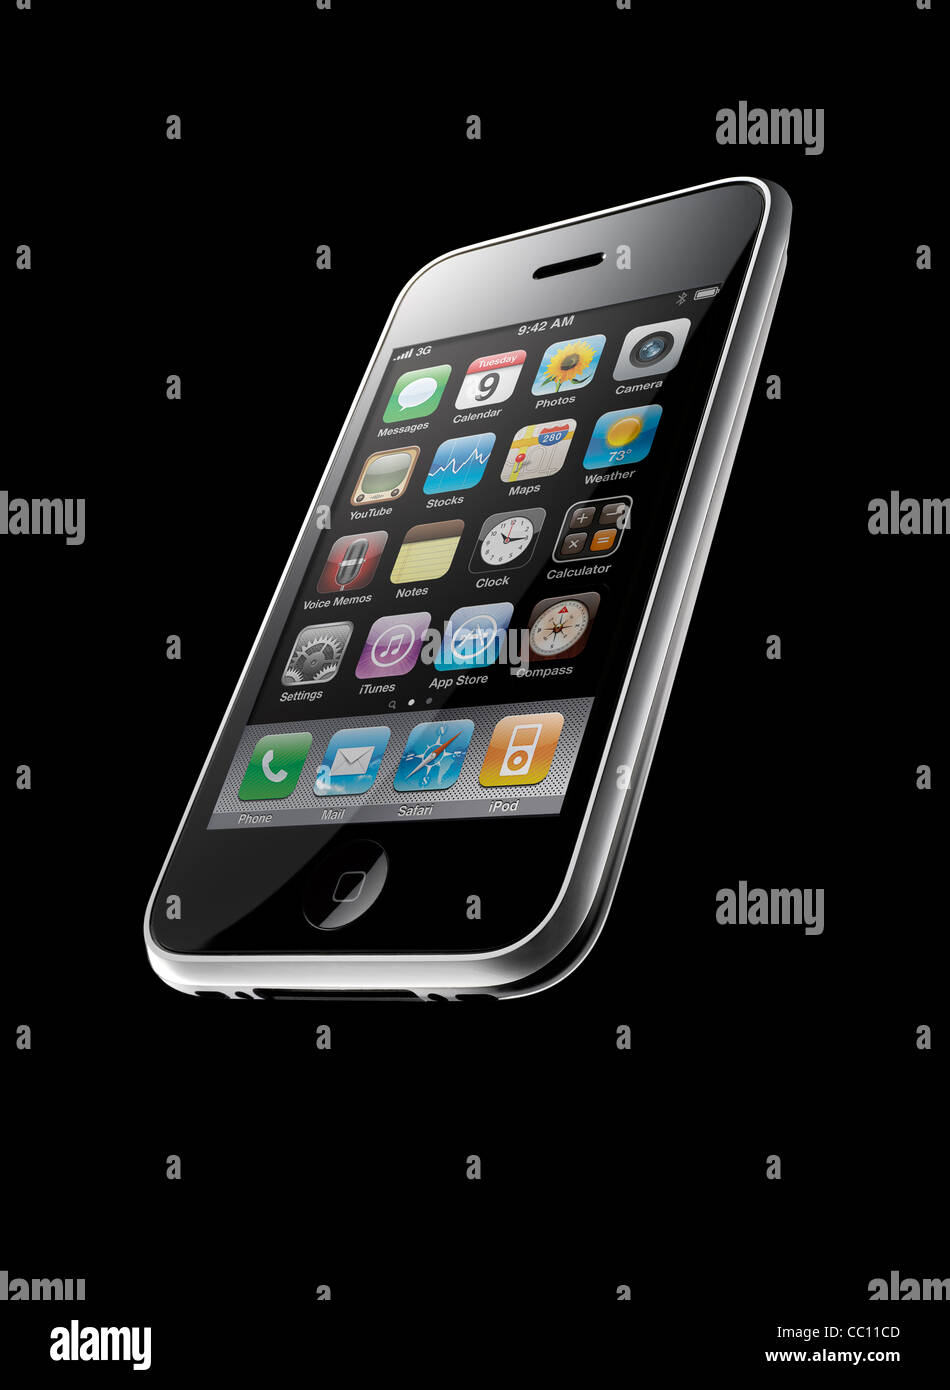 Ảnh iPhone 3GS: Bạn mong muốn có các tấm ảnh đẹp về iPhone 3GS để cập nhật kiến thức về sản phẩm của Apple? Hãy ghé thăm ảnh iPhone 3GS và tìm hiểu về các tính năng nổi bật của chiếc điện thoại này qua những bức ảnh cực kỳ sống động và chân thực. 